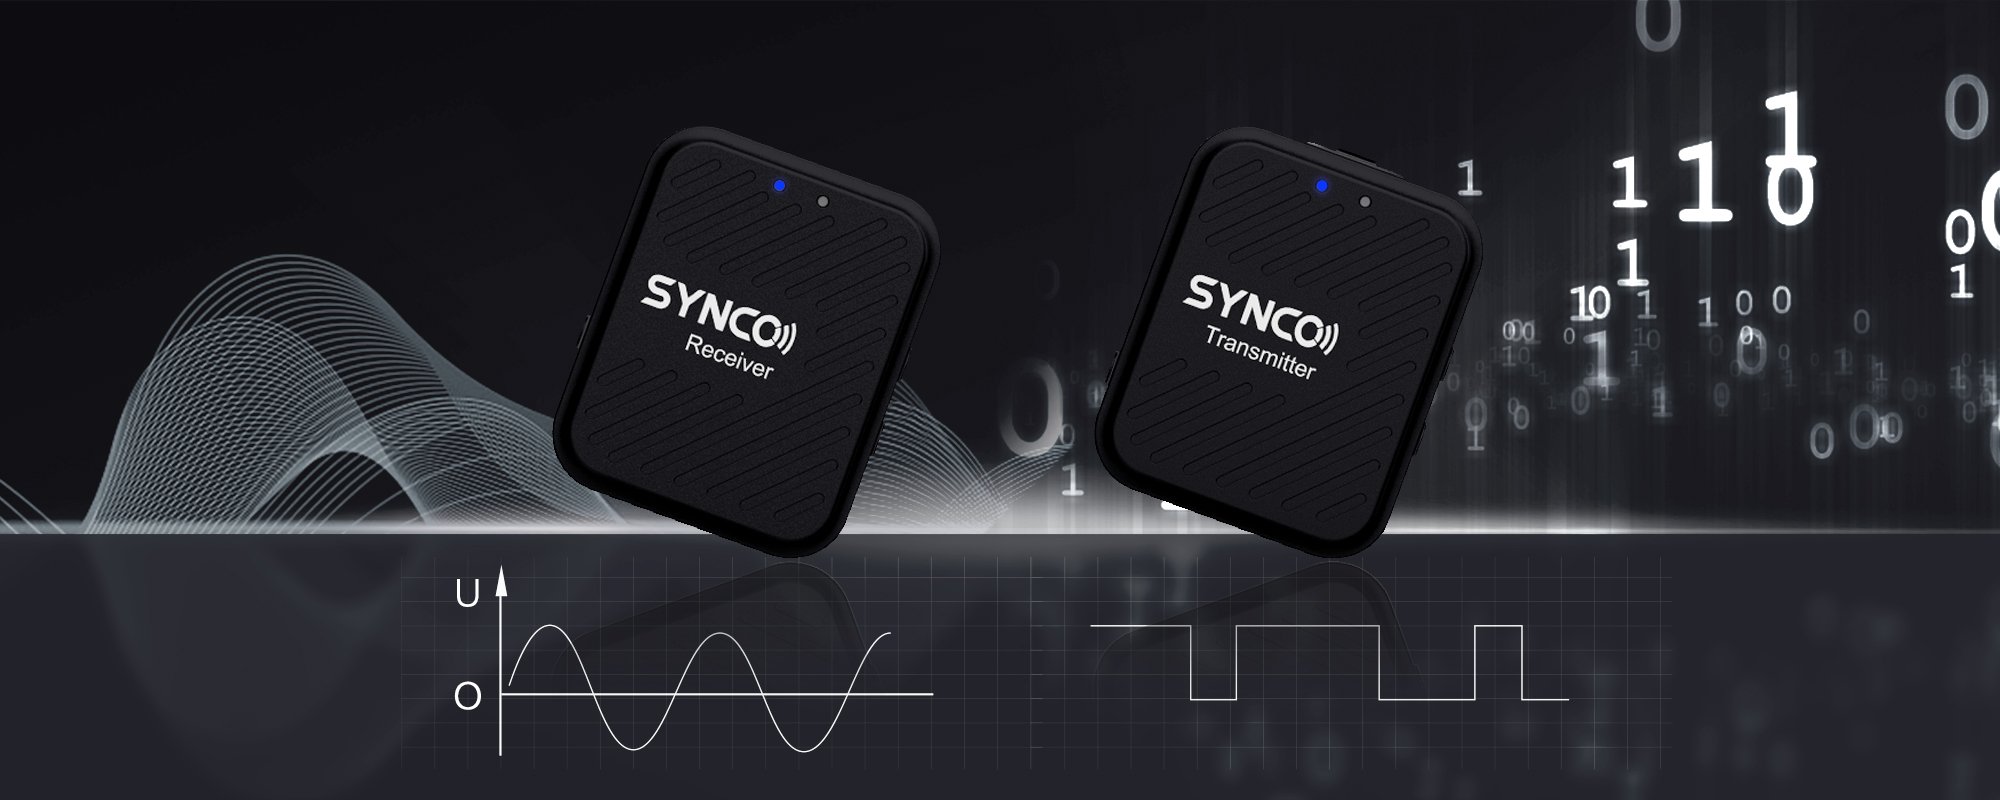 Synco G1 A2 Demo